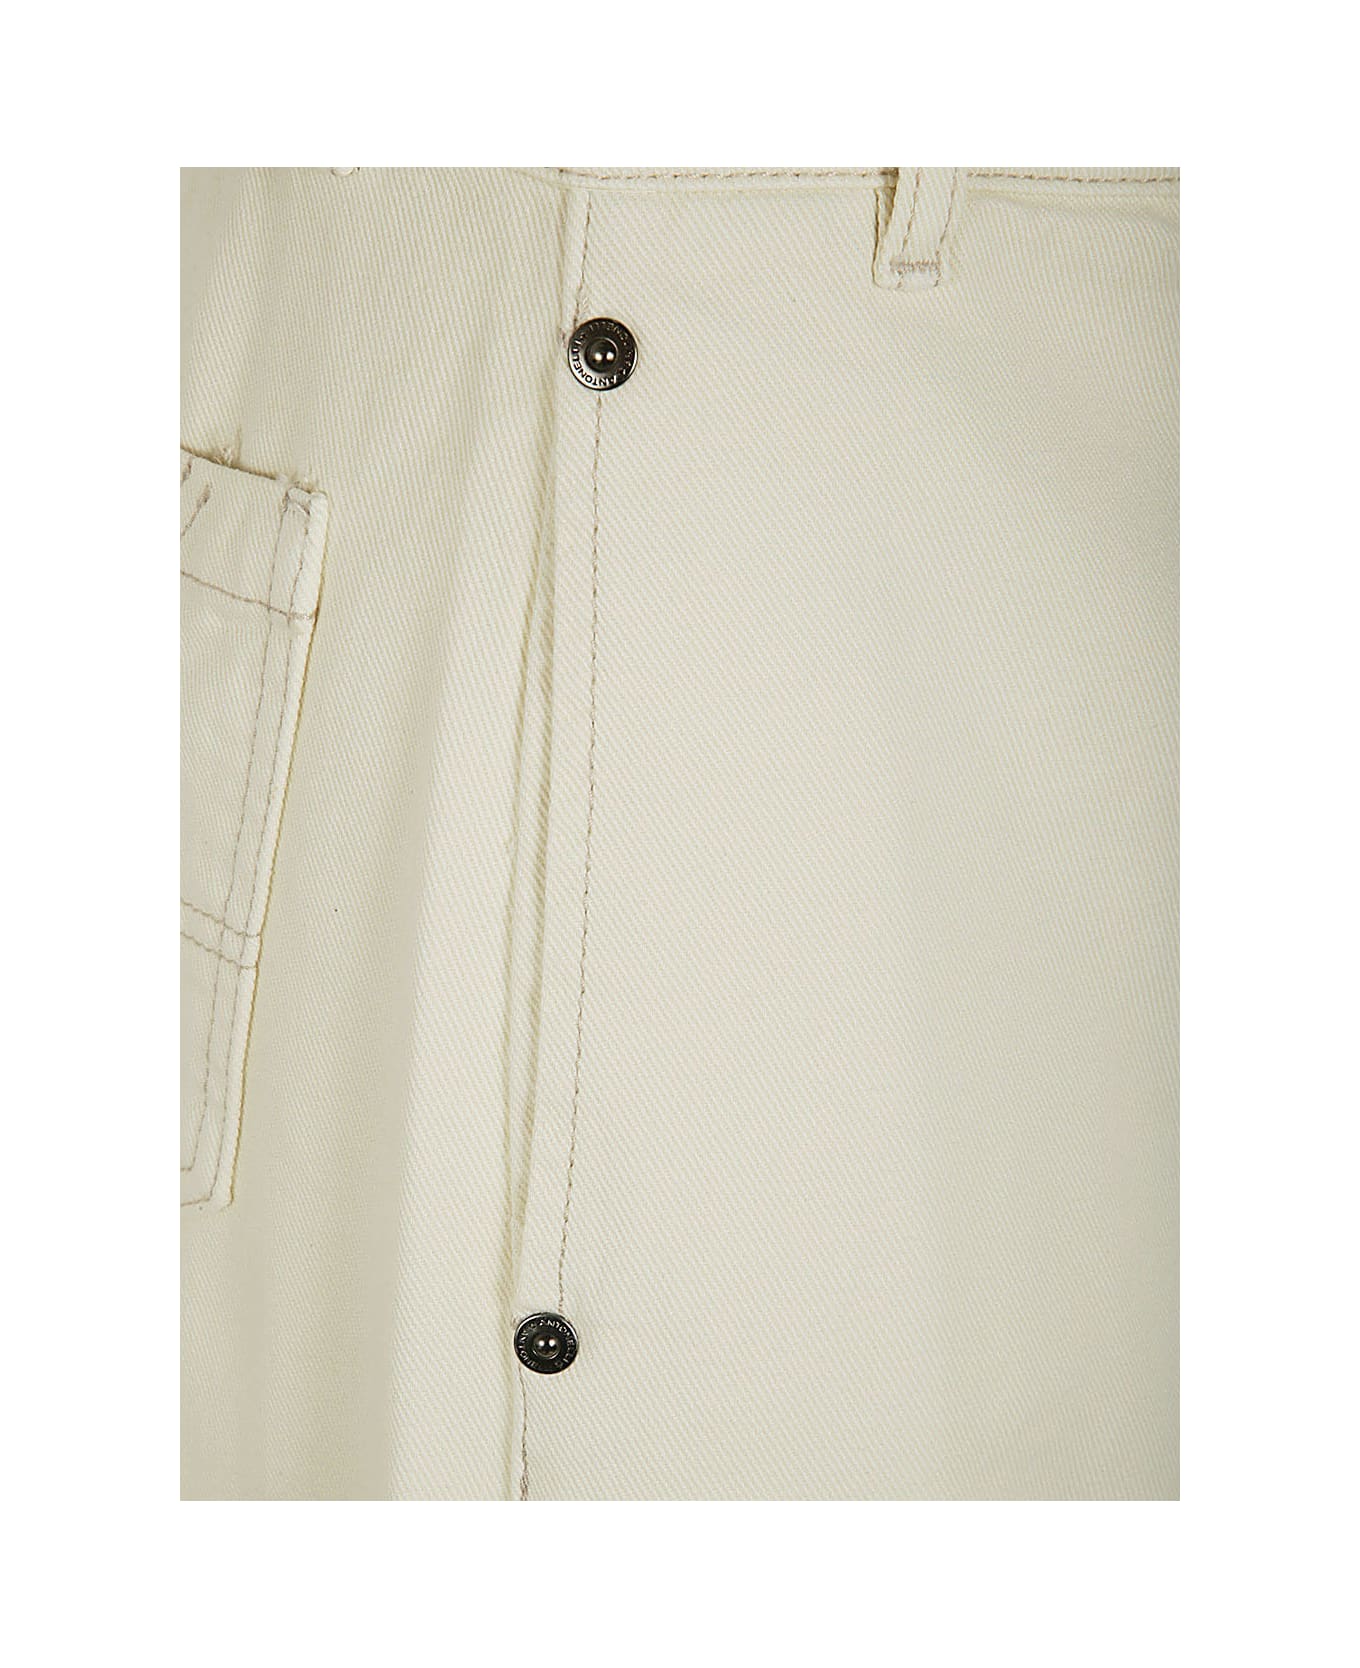 Antonelli Iago Denim Skirt With Slit - Cream